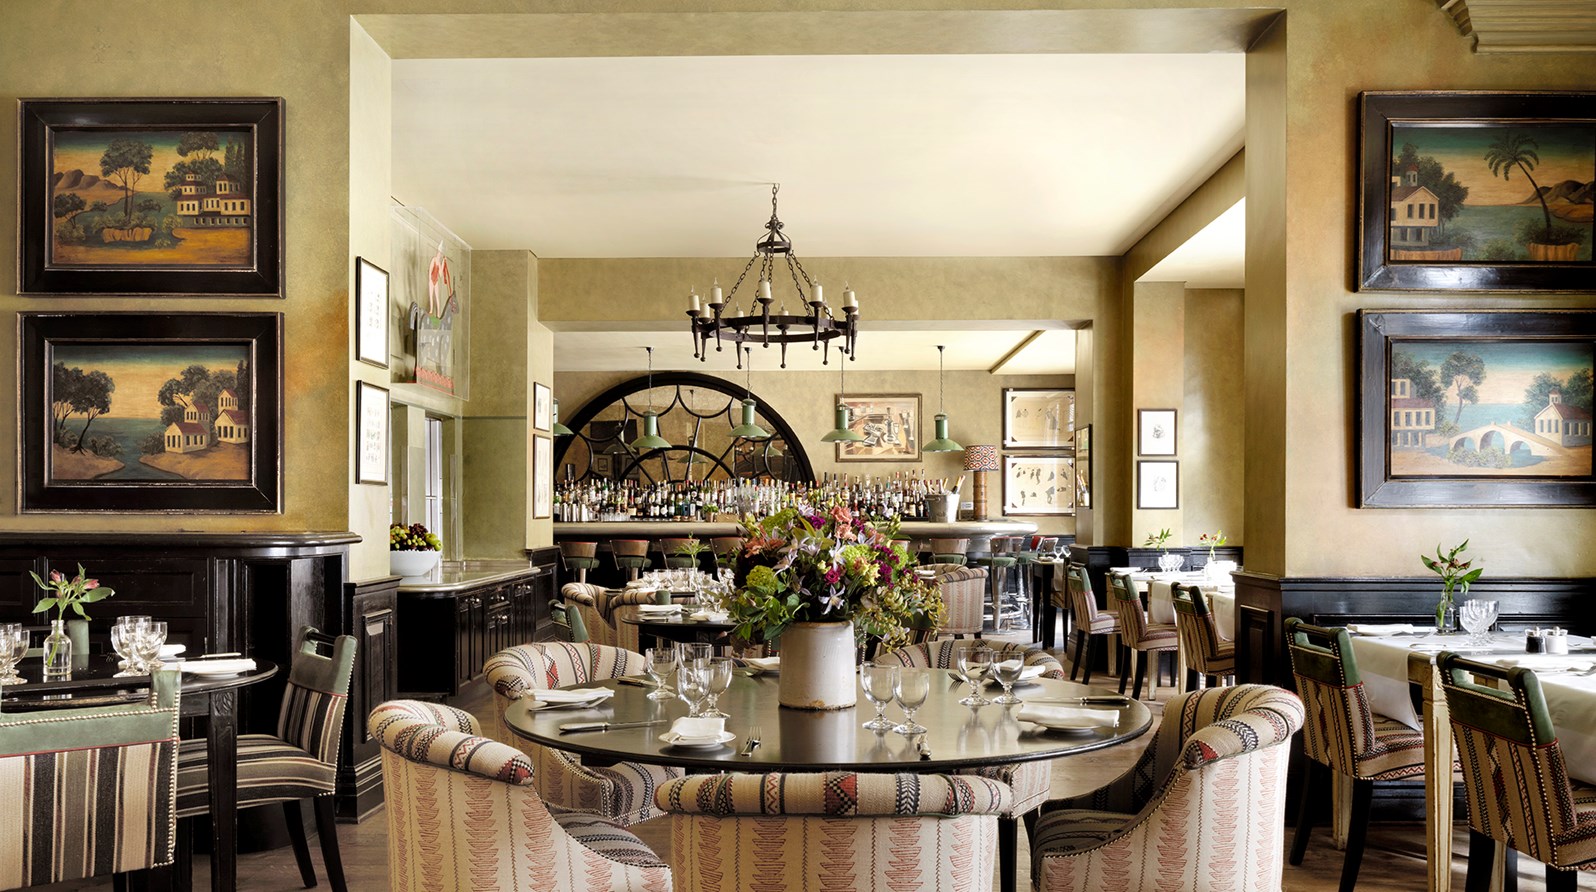 Family Restaurants In Covent Garden - Image Result For Family